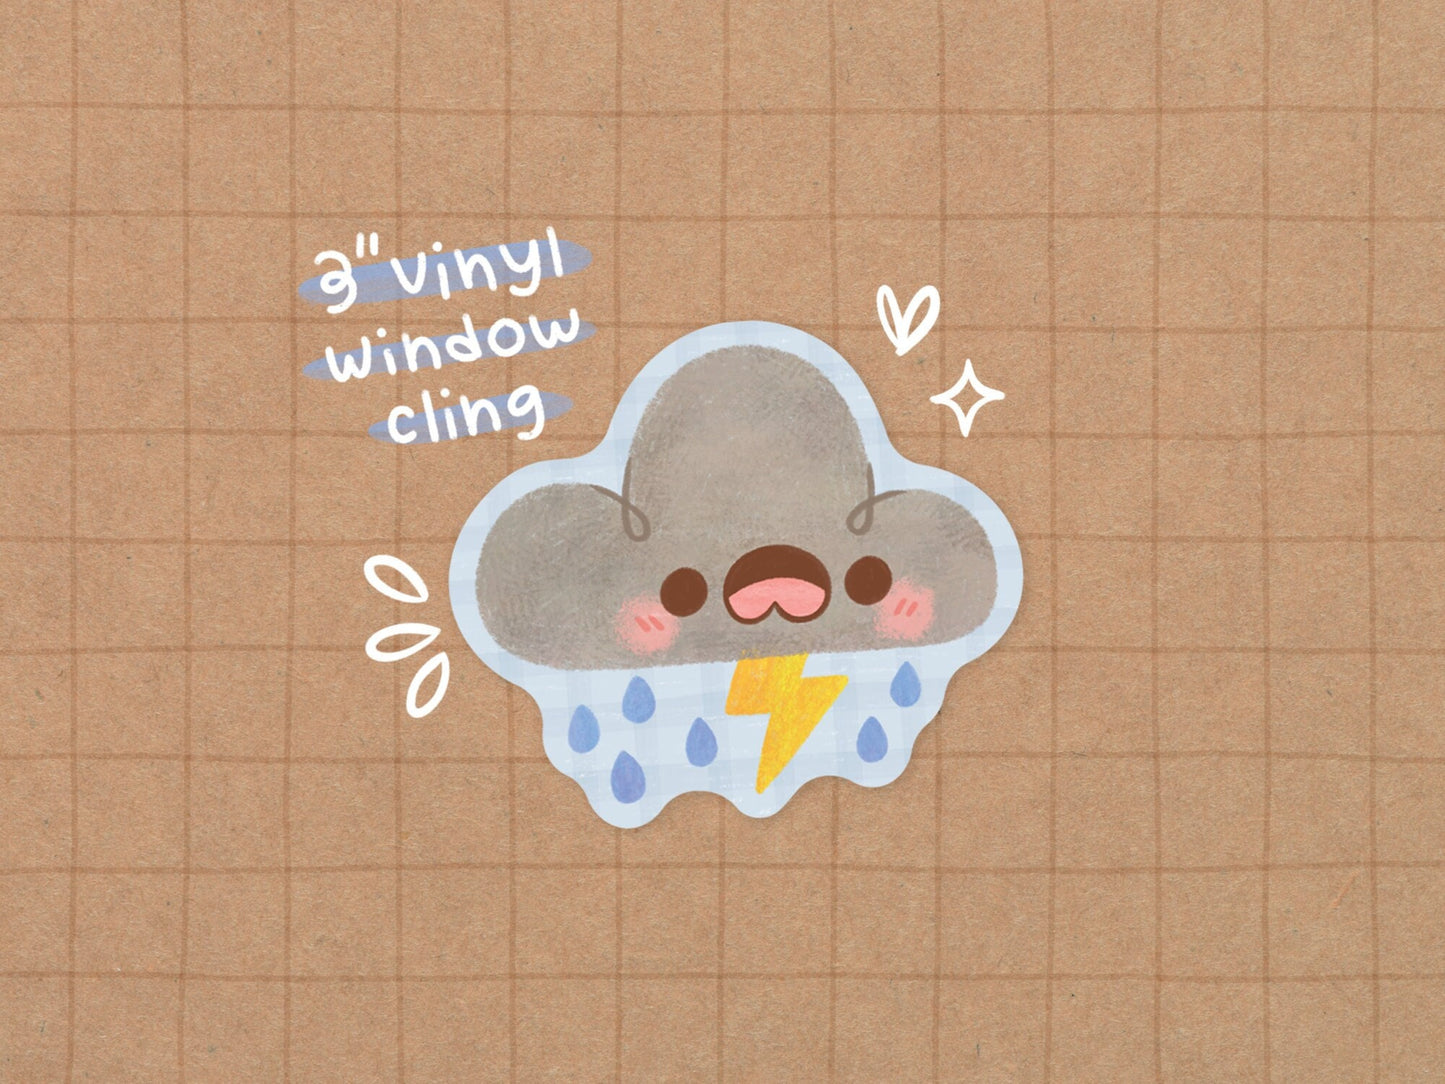 Rainy Cloud Window Cling